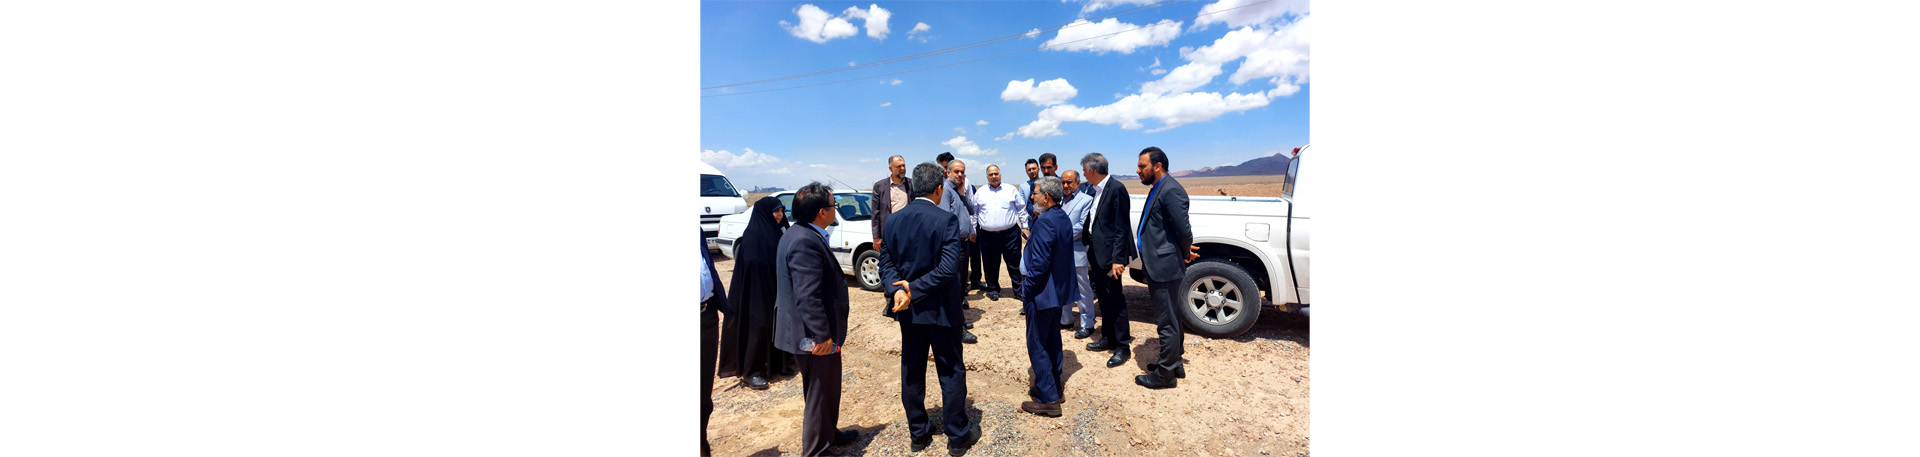 بازدید دو روزه دکتر فخاری و هیئت همراه از مجتمع تولید گوشت مرغ ماهان در کرمان: